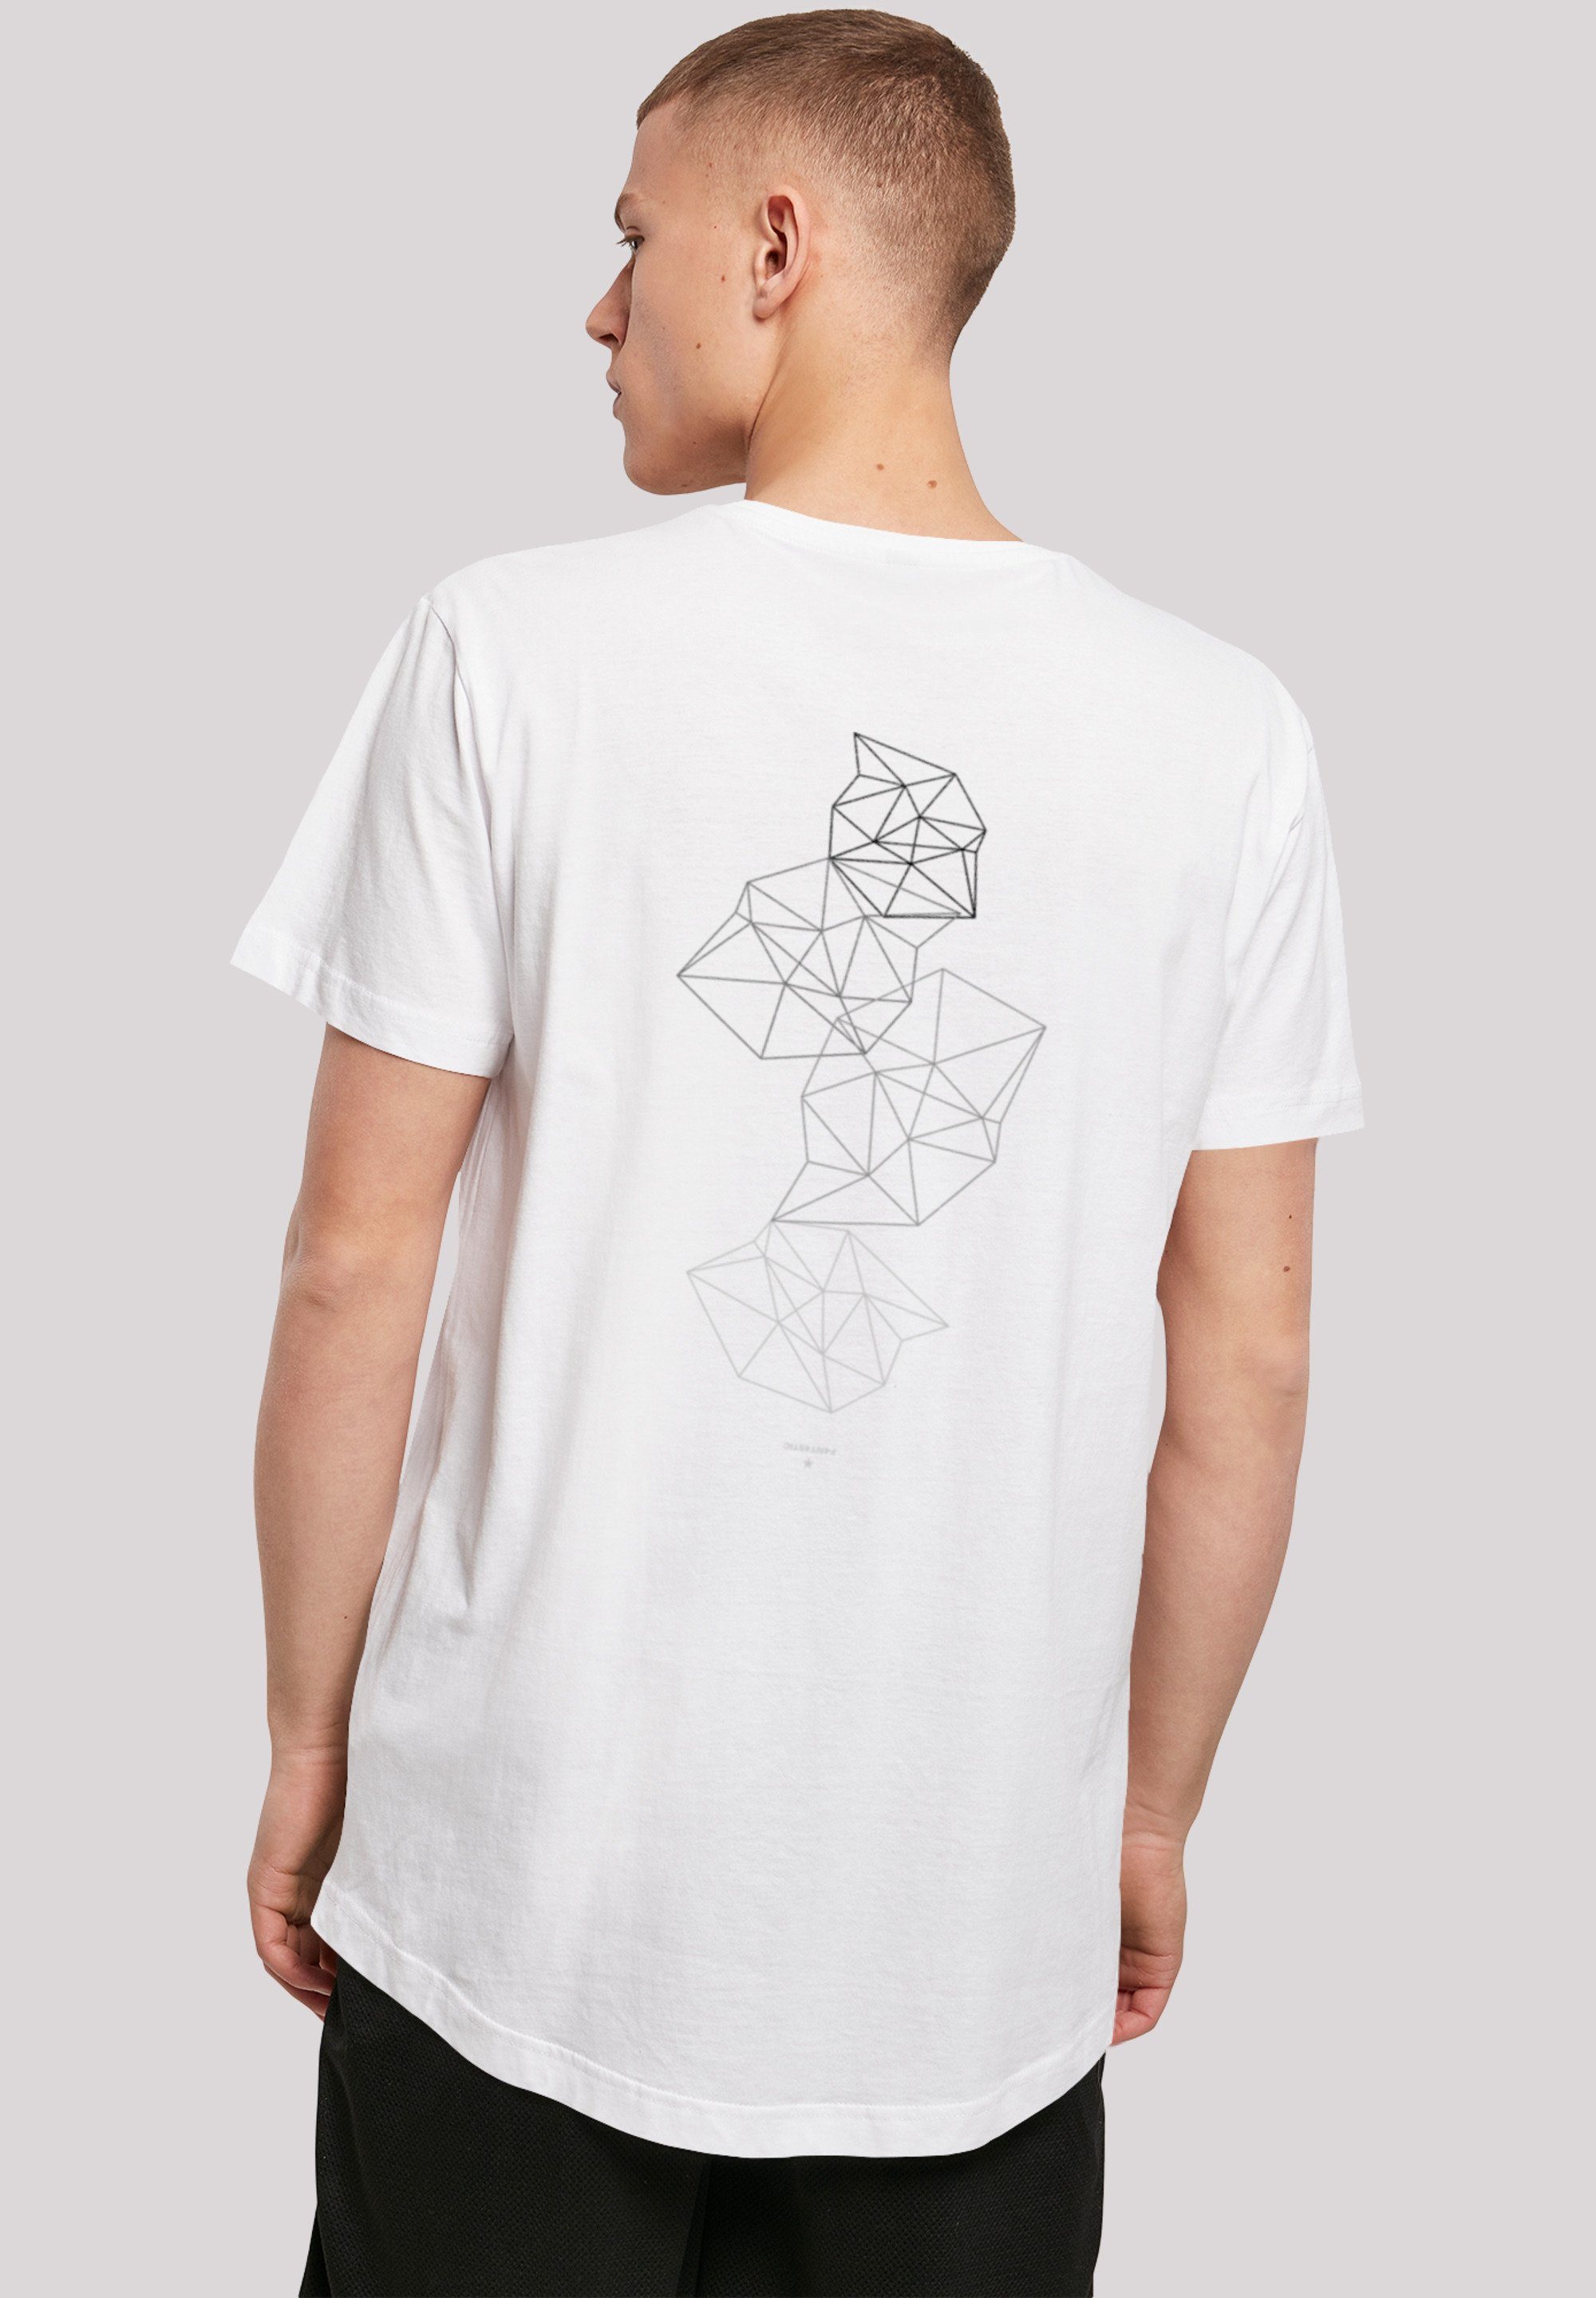 T-Shirt weiß Print Abstract F4NT4STIC Geometrics